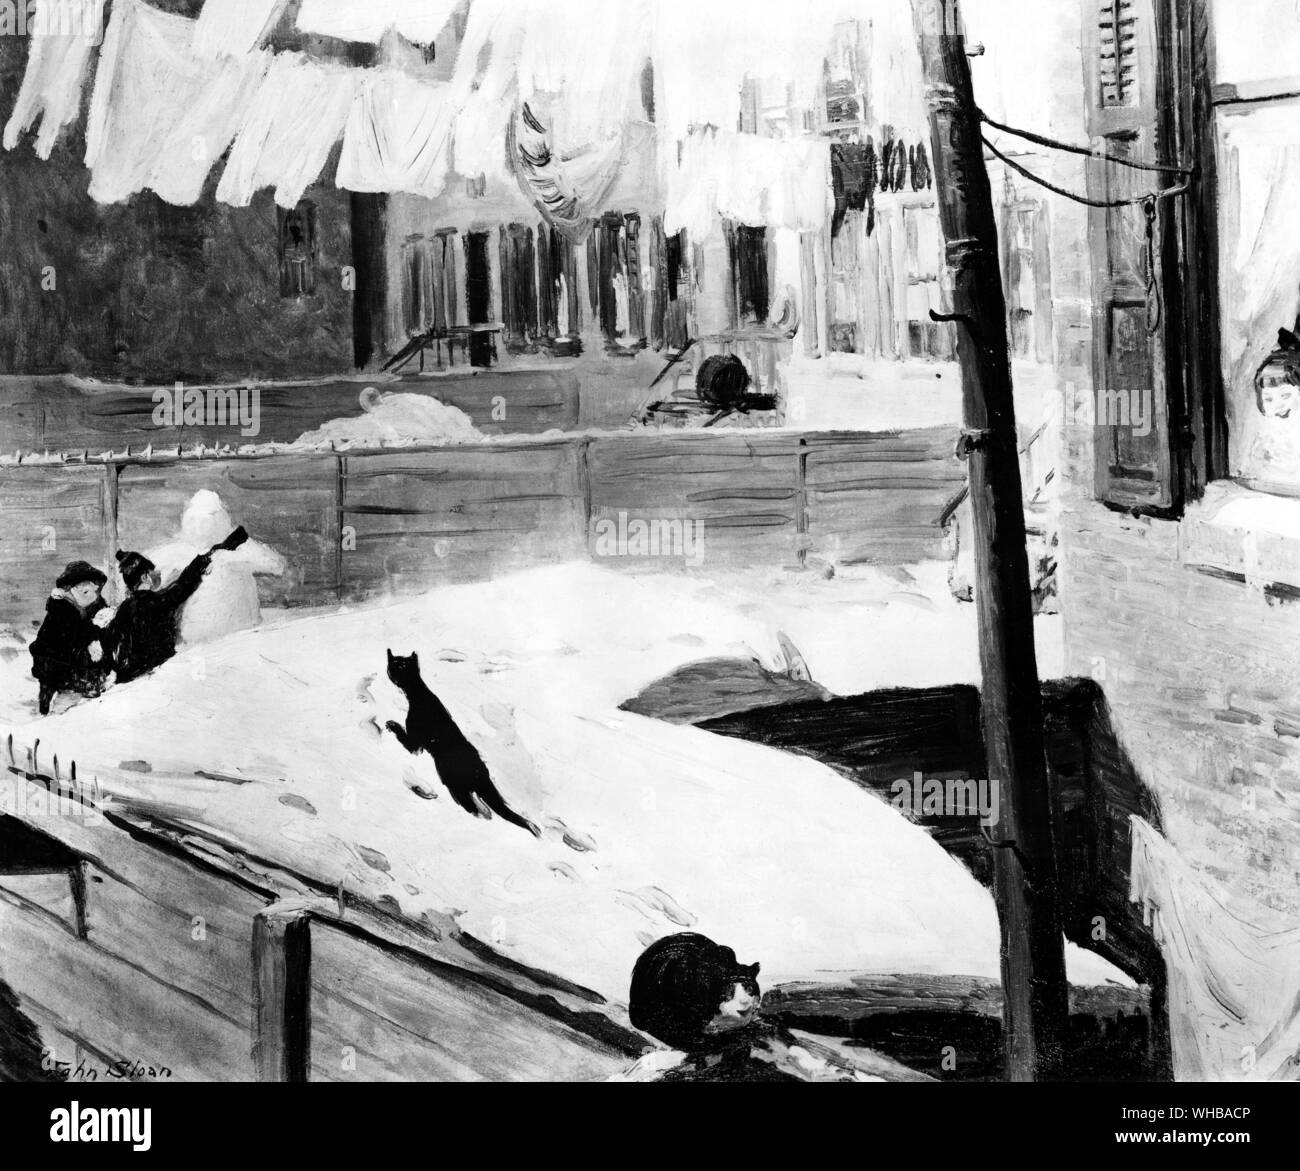 Hinterhöfe Greenwich Village 1914 durch John Sloan. Öl auf Leinwand. . Zeigt Kinder, die sich um einen hässlichen Snowperson mit Unförmigen obere Gliedmaßen und kein Hals. ein Junge sie necken mit einer Schaufel. Stockfoto